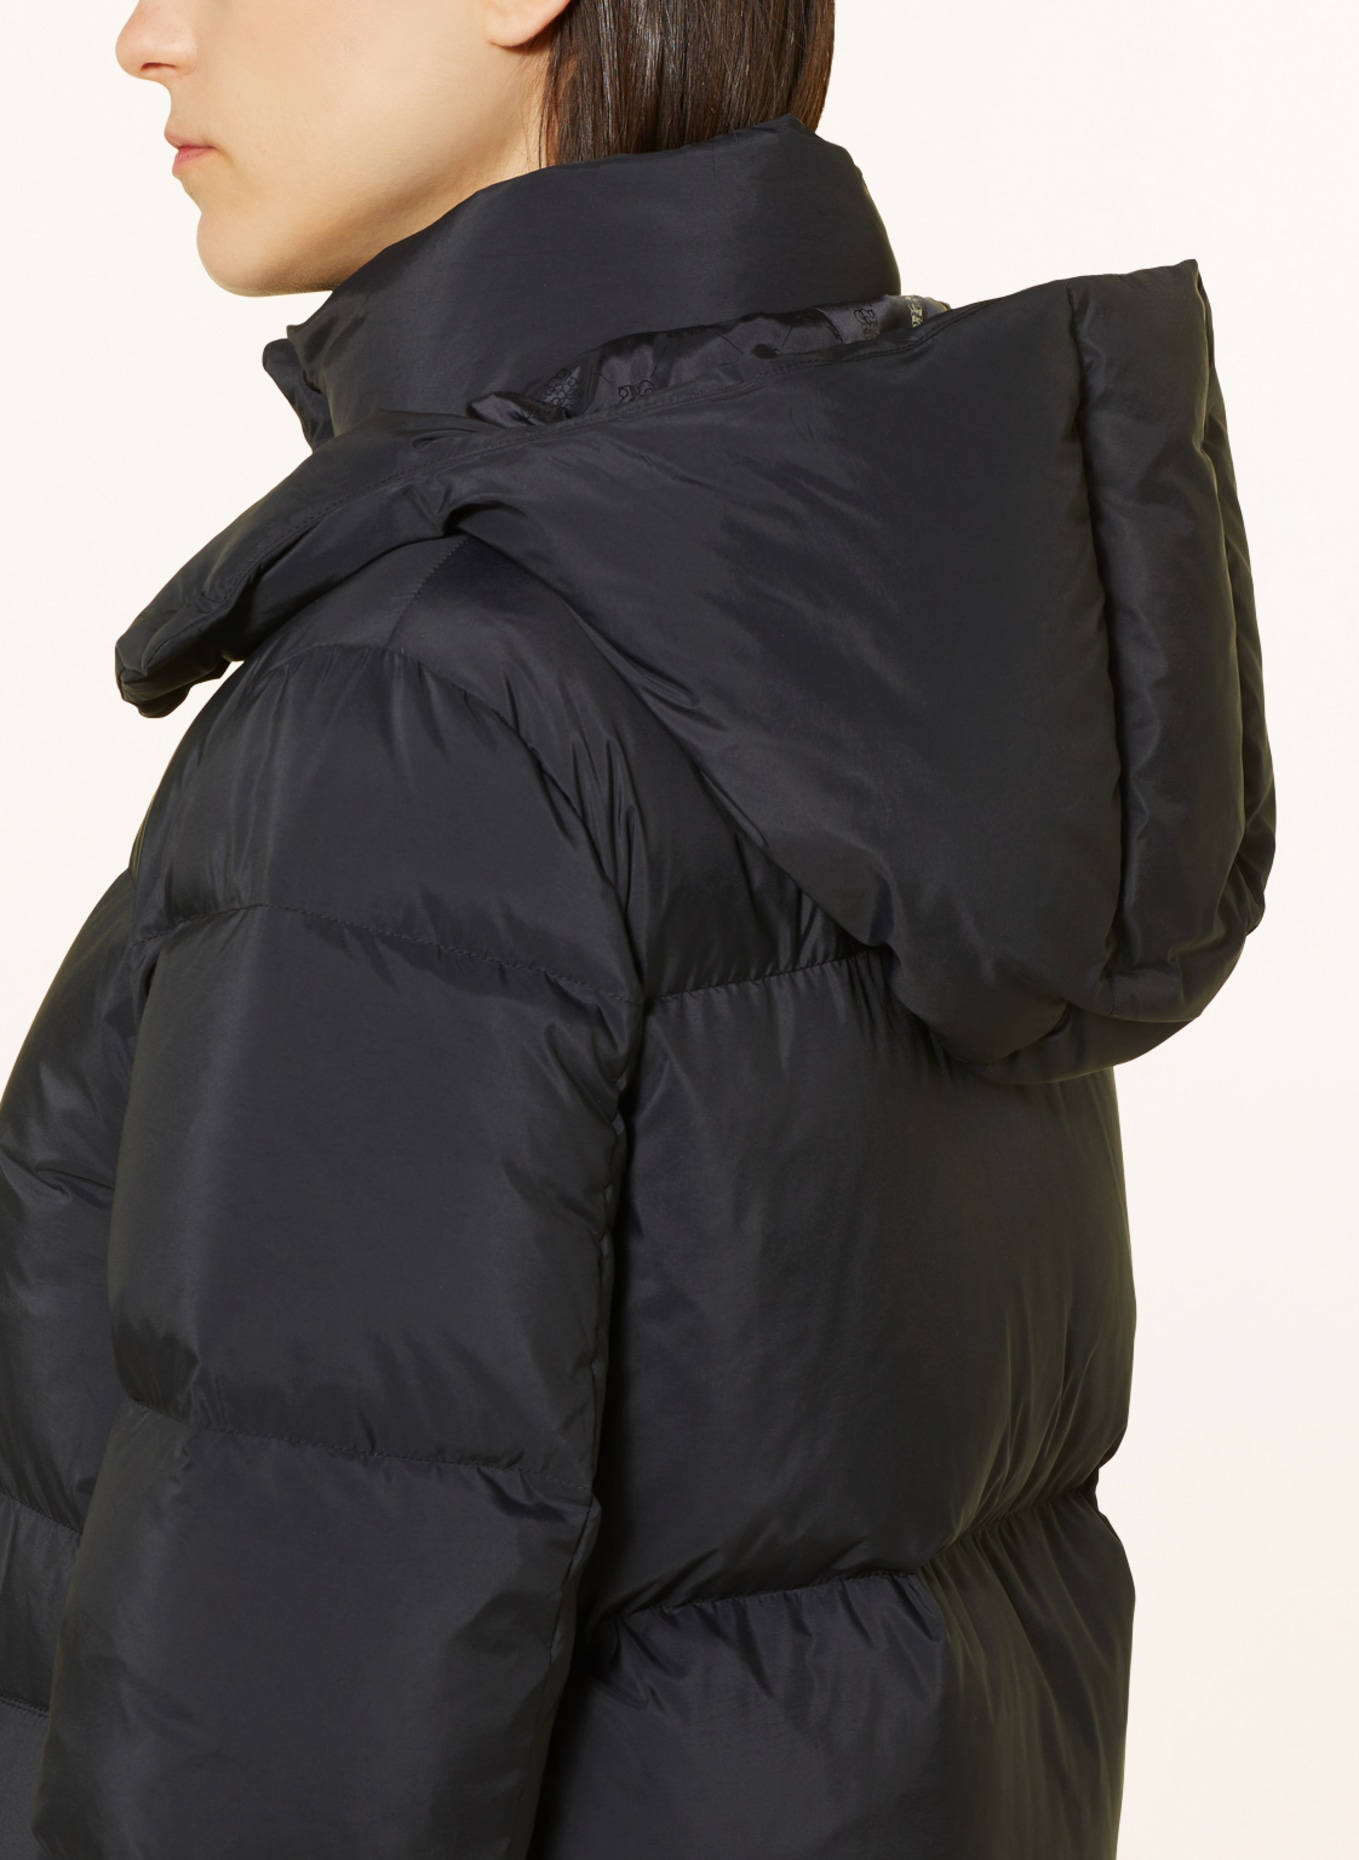 s.Oliver BLACK LABEL Down jacket with removable hood, Color: BLACK (Image 5)